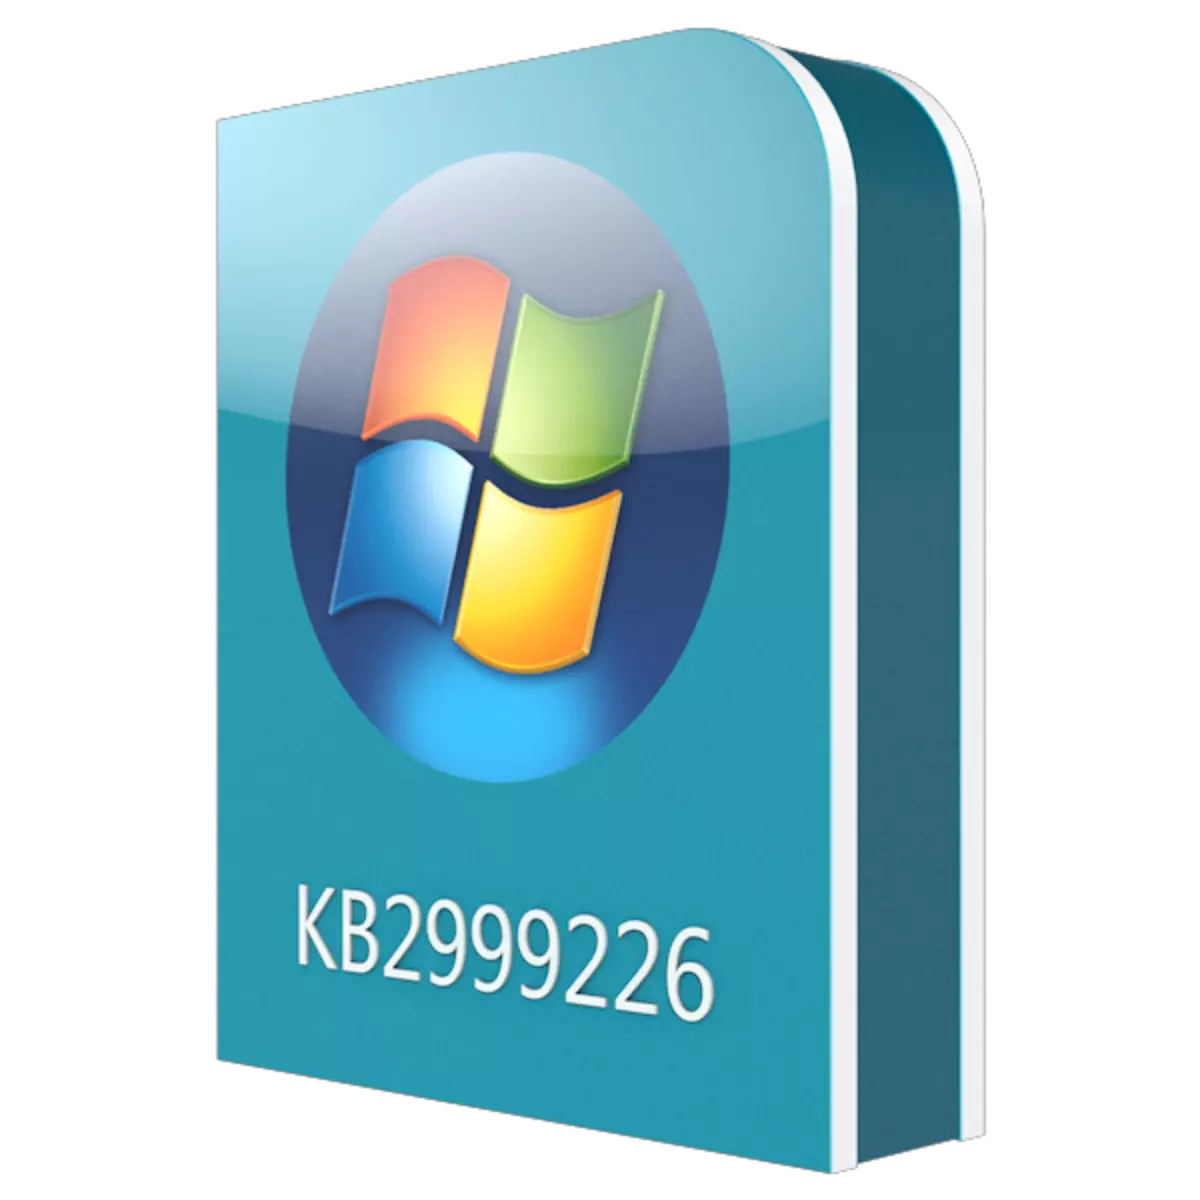 Windows 7 এর জন্য আপডেট ডাউনলোড করুন kb2999226